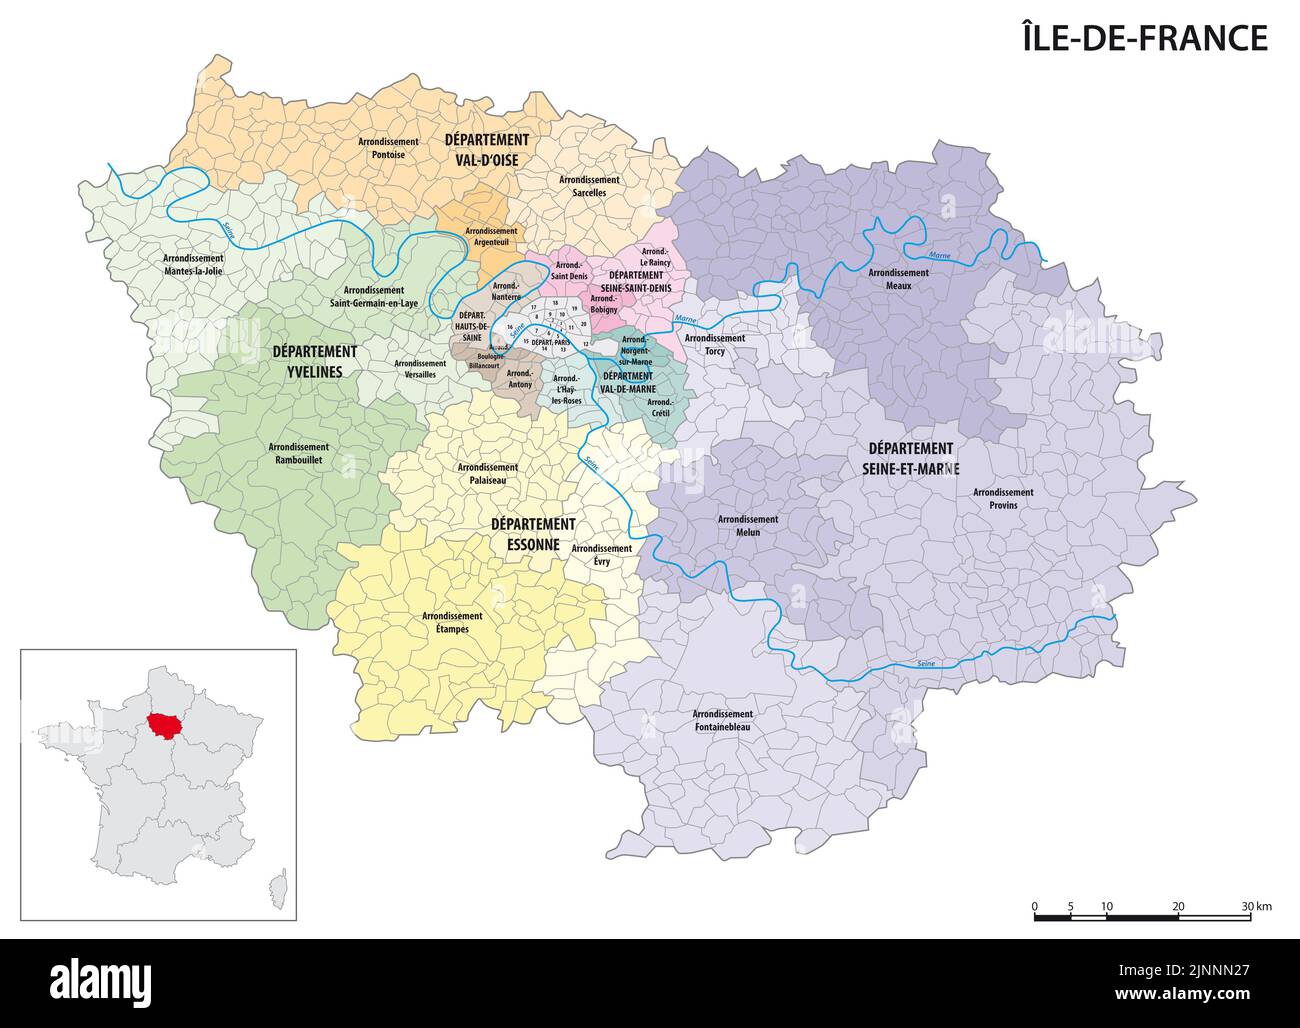 Mappa amministrativa dettagliata della regione Ile-de-France, Francia Foto Stock